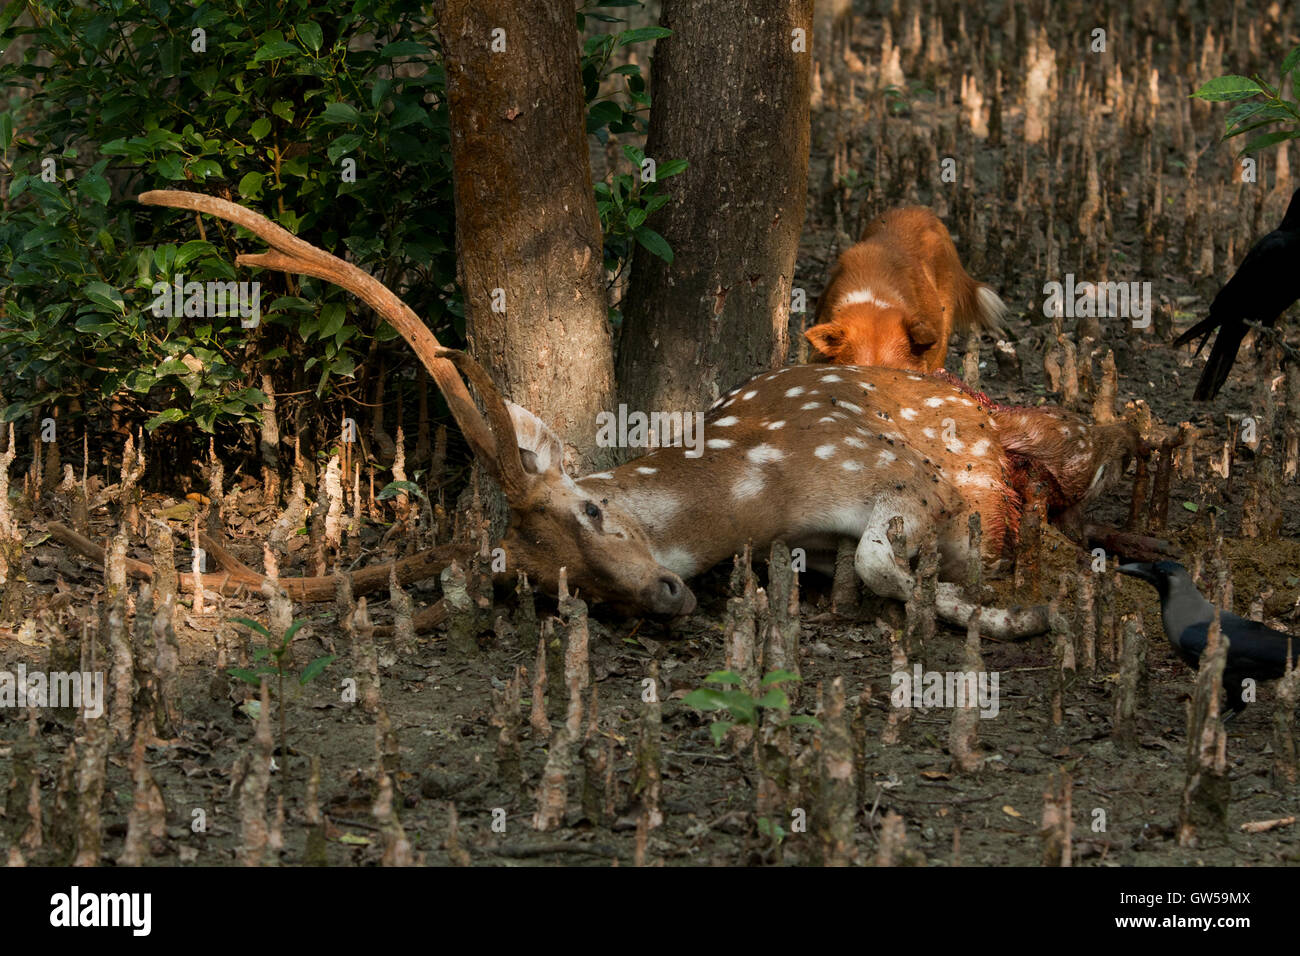 Corps Mort d'un cerf tacheté. Cerfs communs repèrés parfois attaqués par des chiens sauvages. Nijhum Dwip, Hatia, Noakhali, au Bangladesh. Banque D'Images